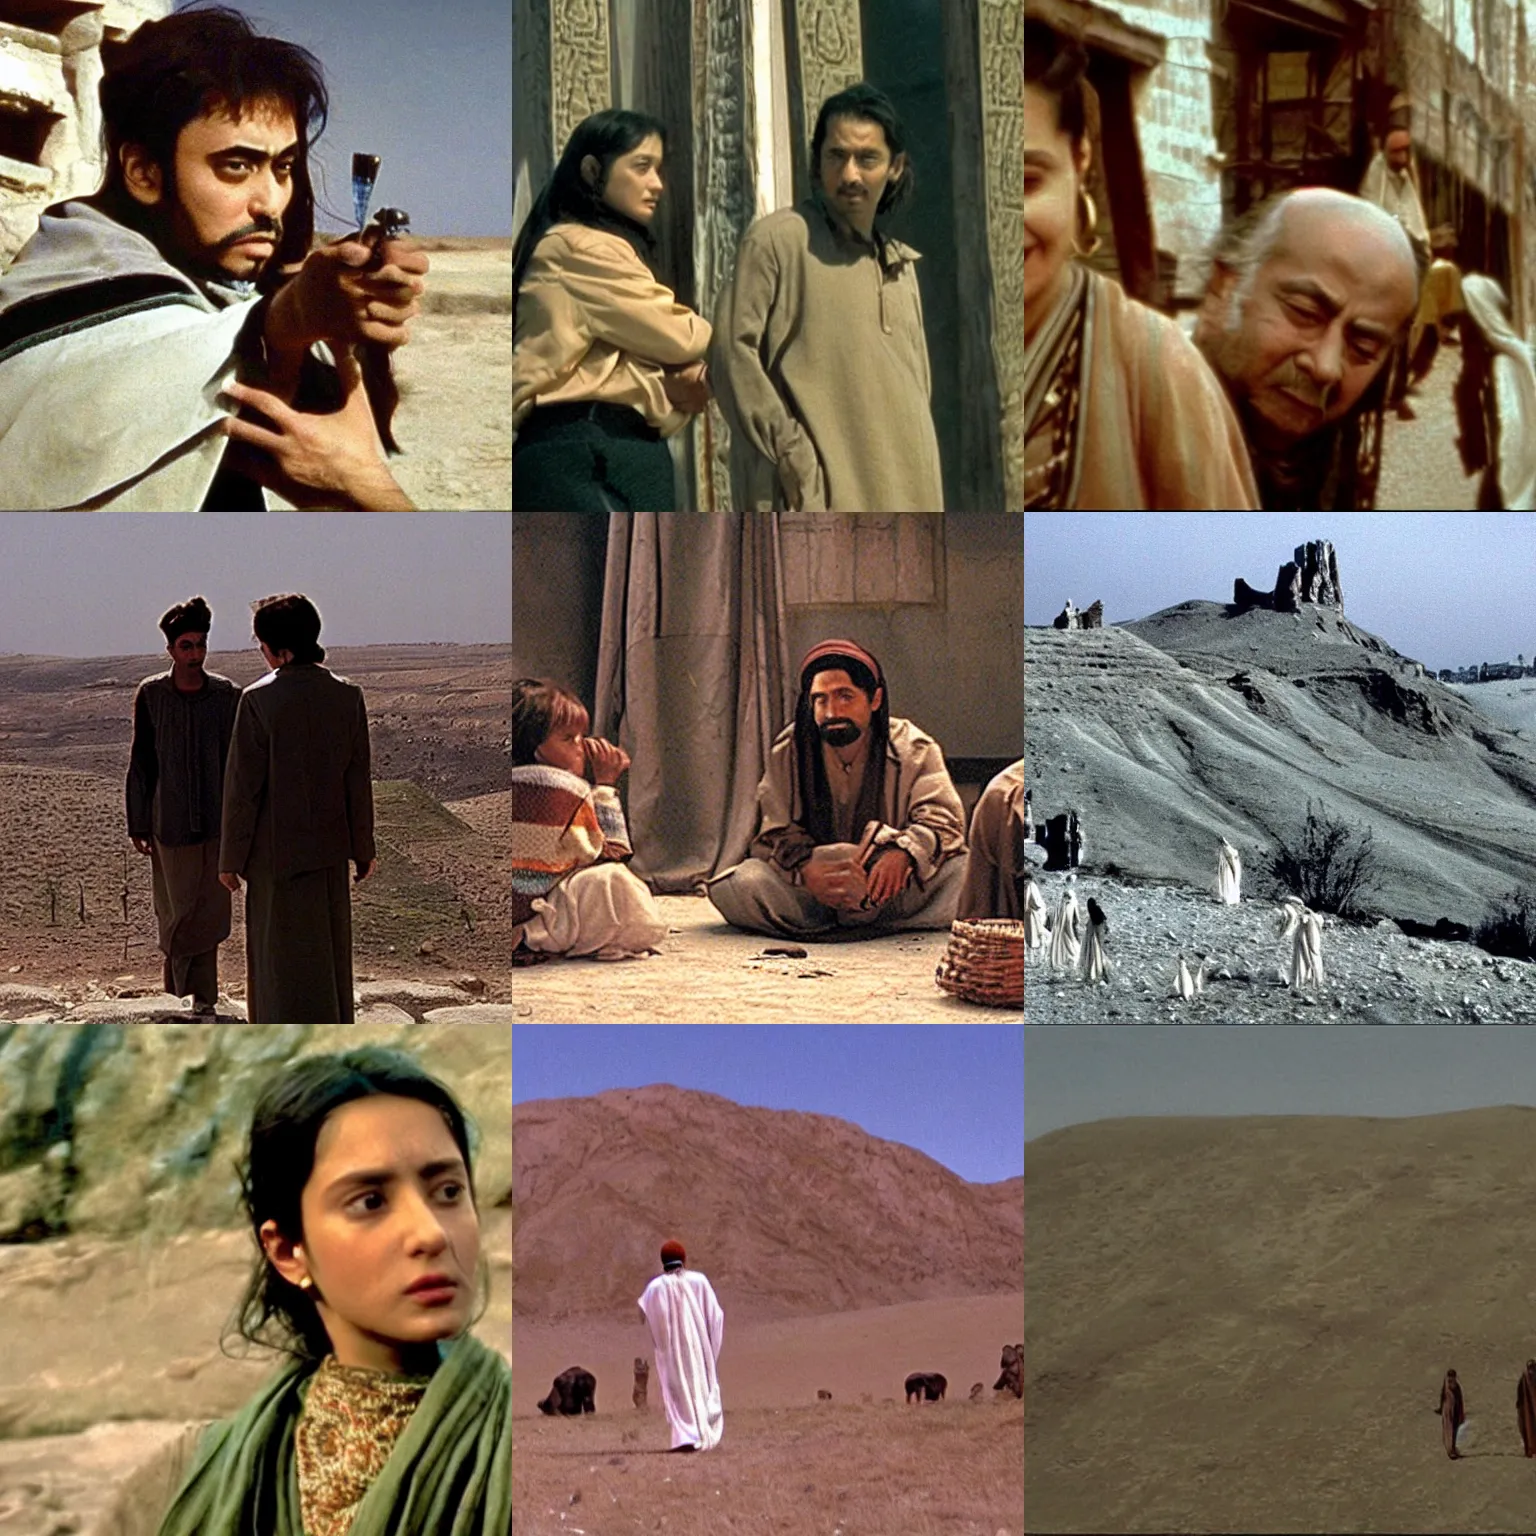 Prompt: a film still from naqoyqatsi ( 2 0 0 2 )